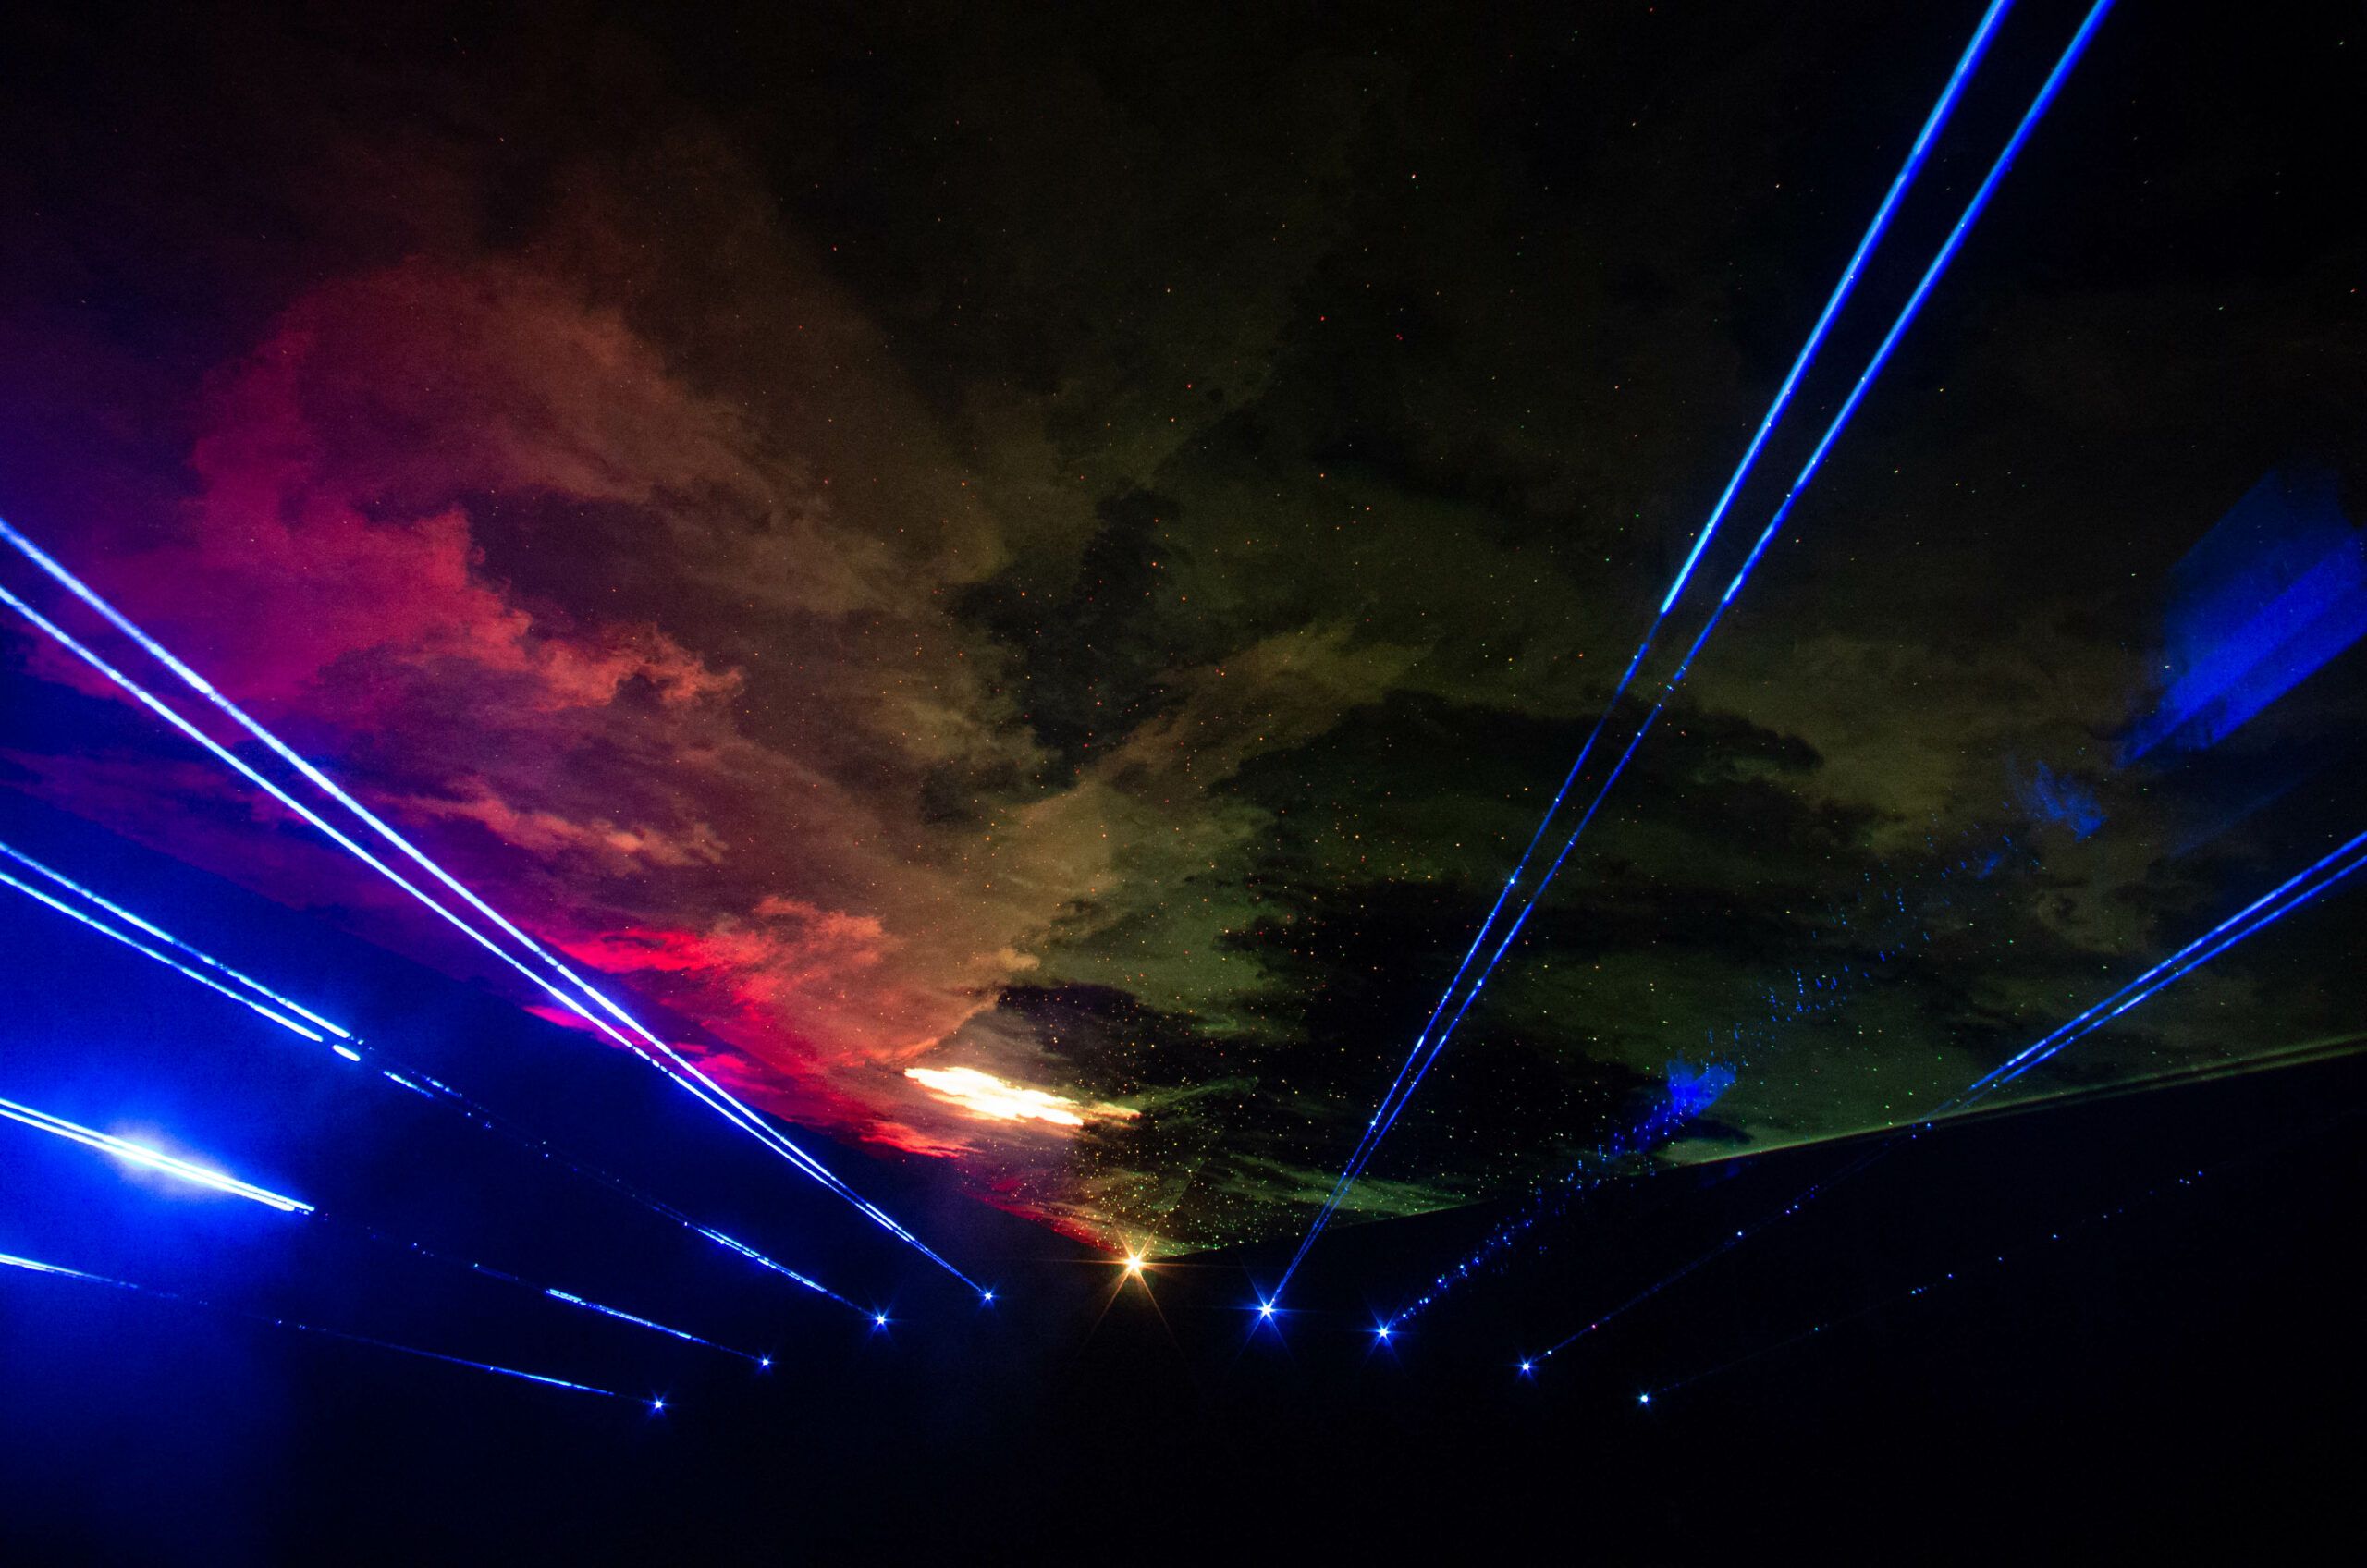 Eco-friendly multicolored laser show